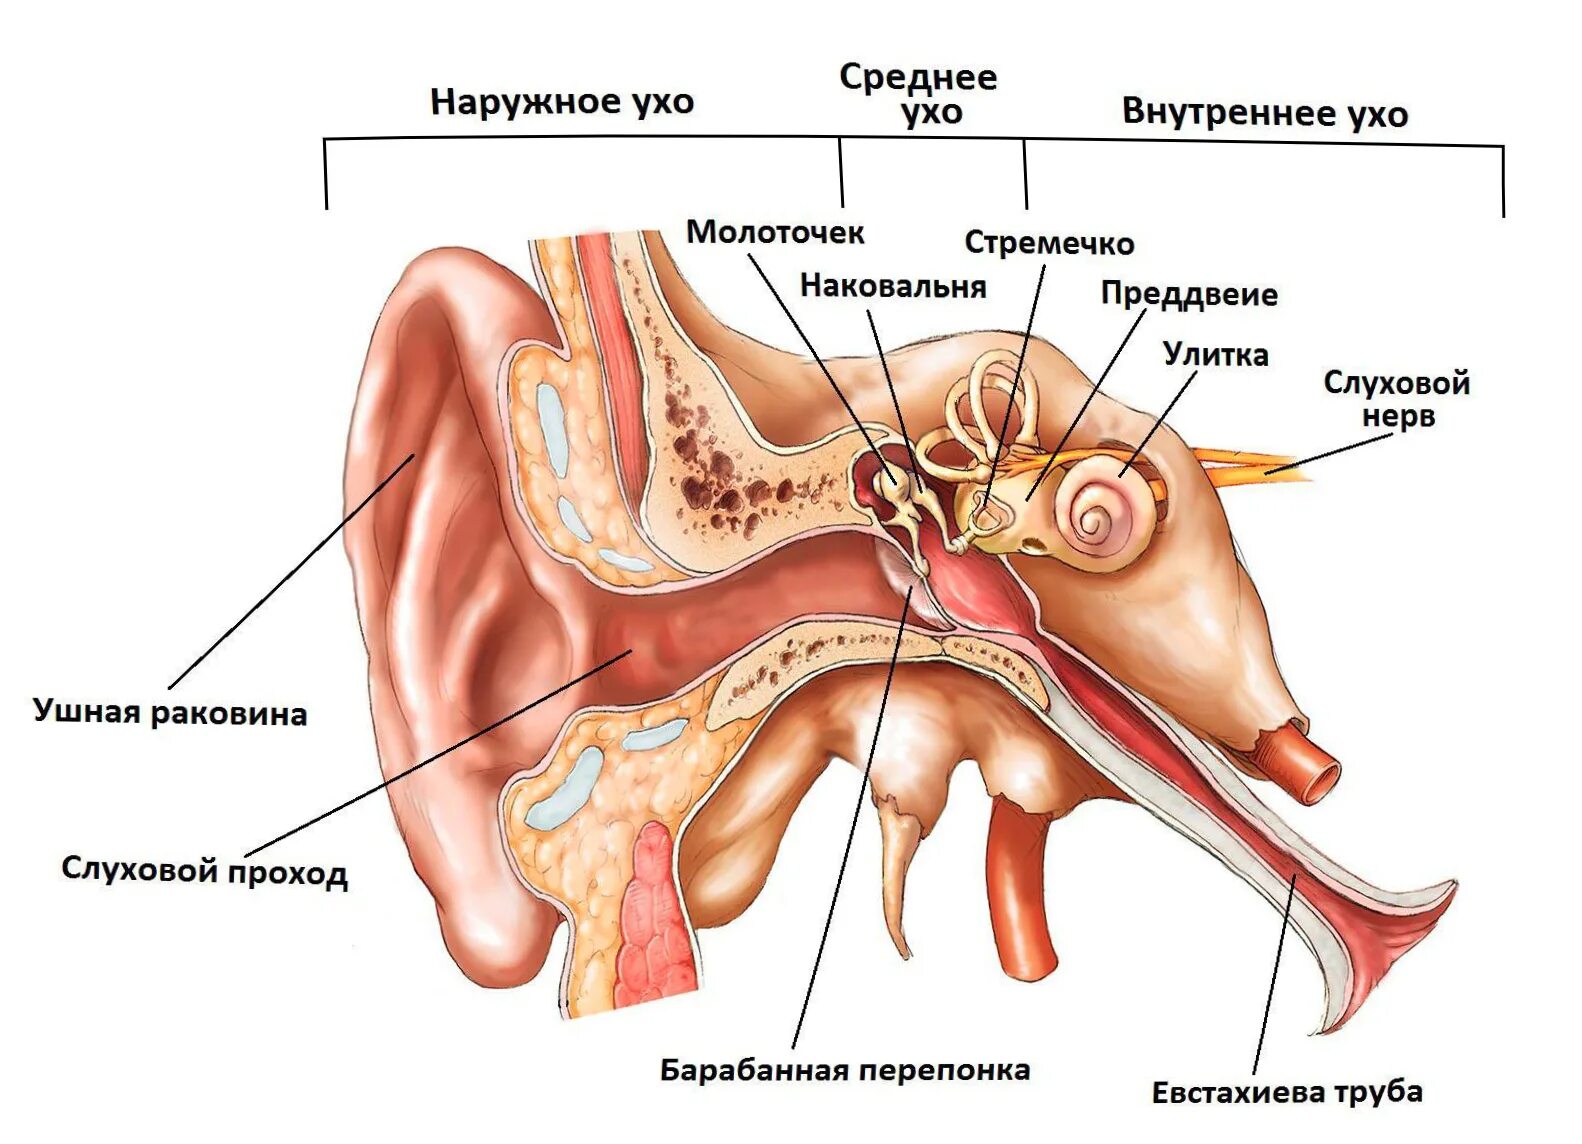 Строение уха человека слуховые косточки. Среднее ухо барабанная перепонка слуховые косточки. Среднее ухо барабанная полость евстахиева труба. Анатомия и физиология уха слуховой анализатор. Молоточек внутреннее ухо